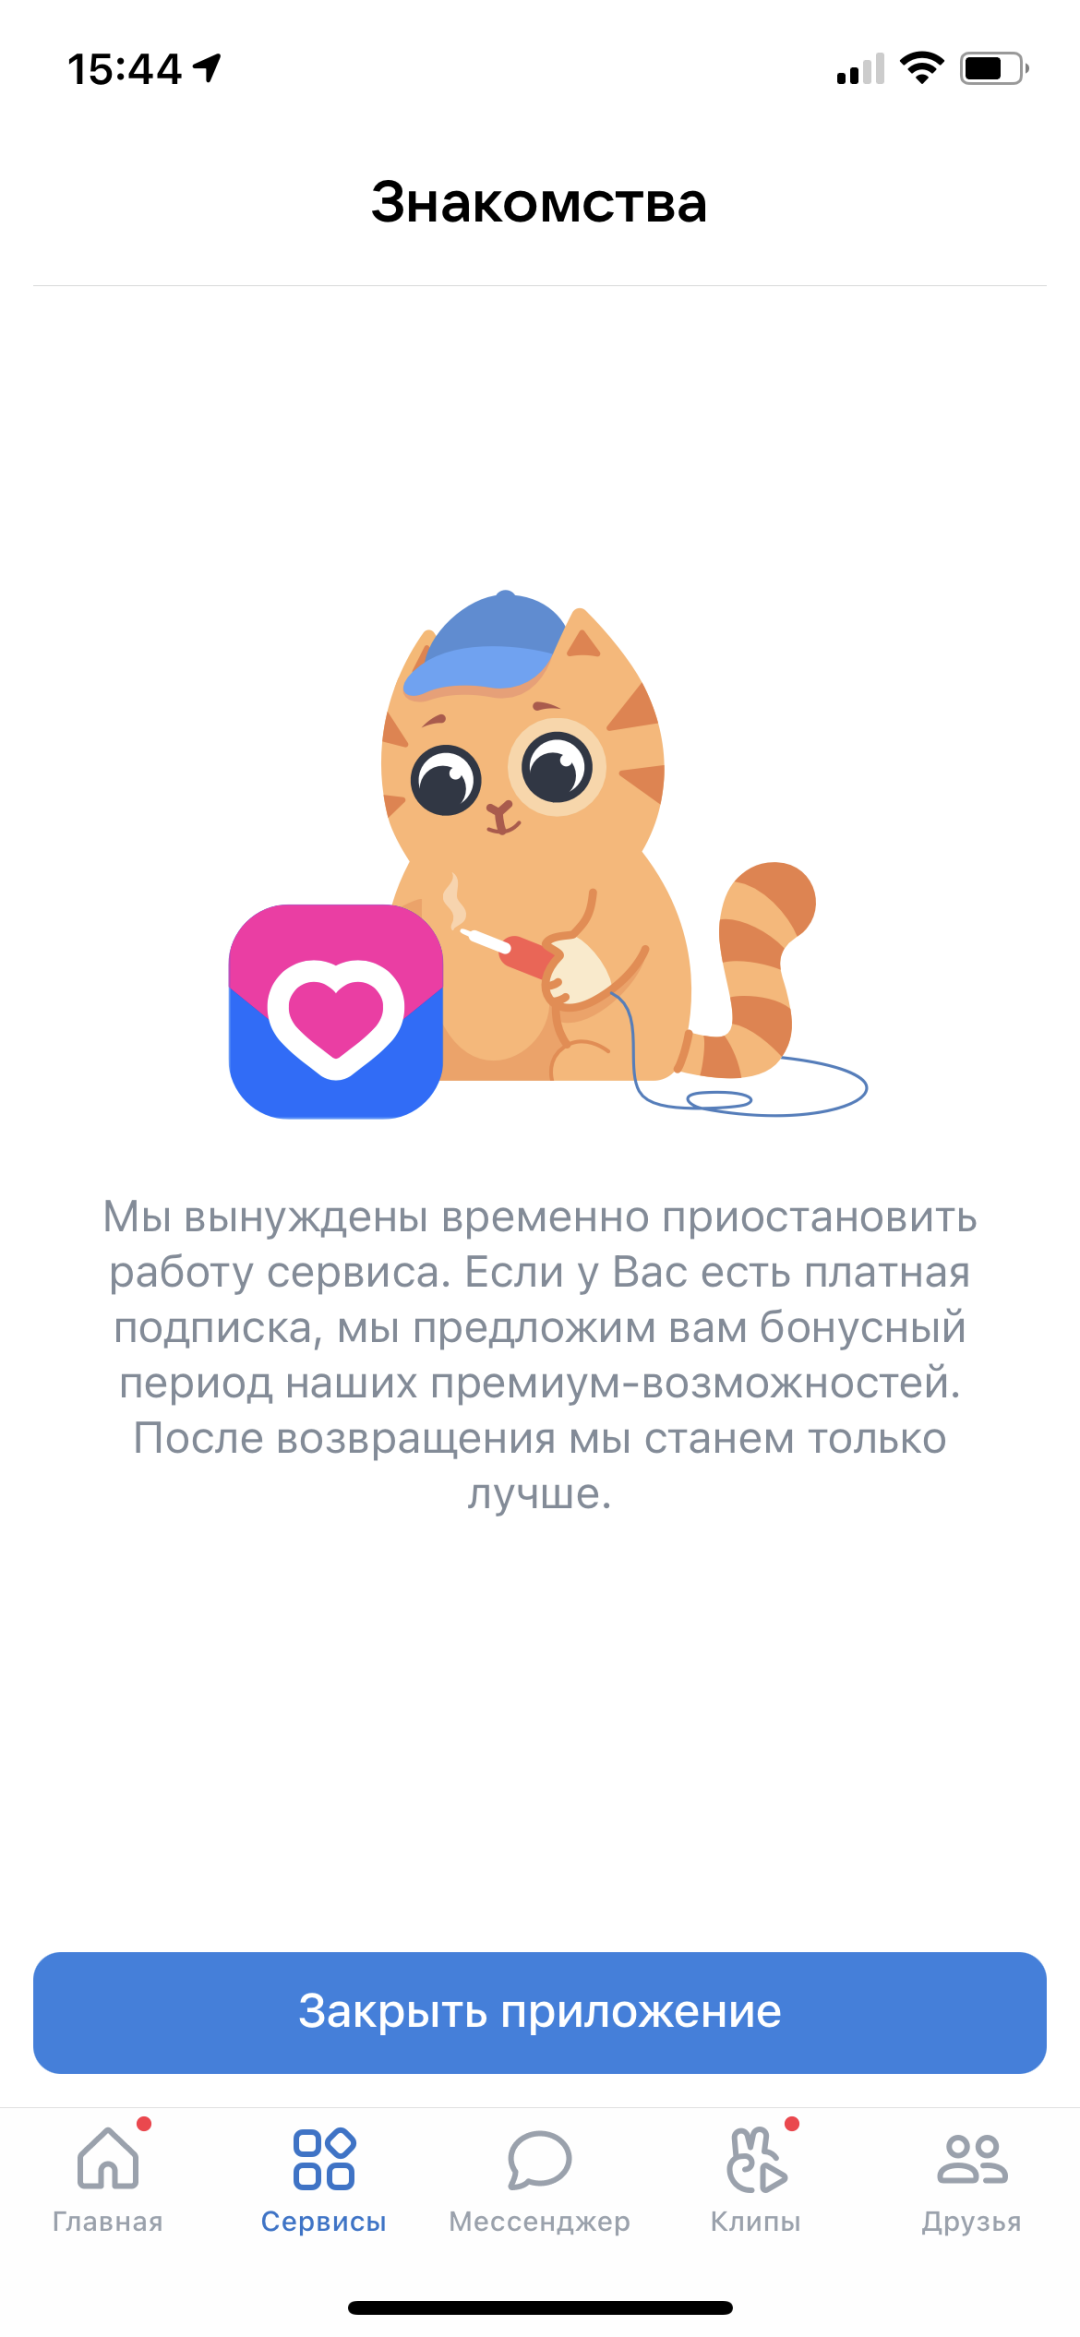 эвакуатор-магнитогорск.рф — знакомства и любовь | ВКонтакте